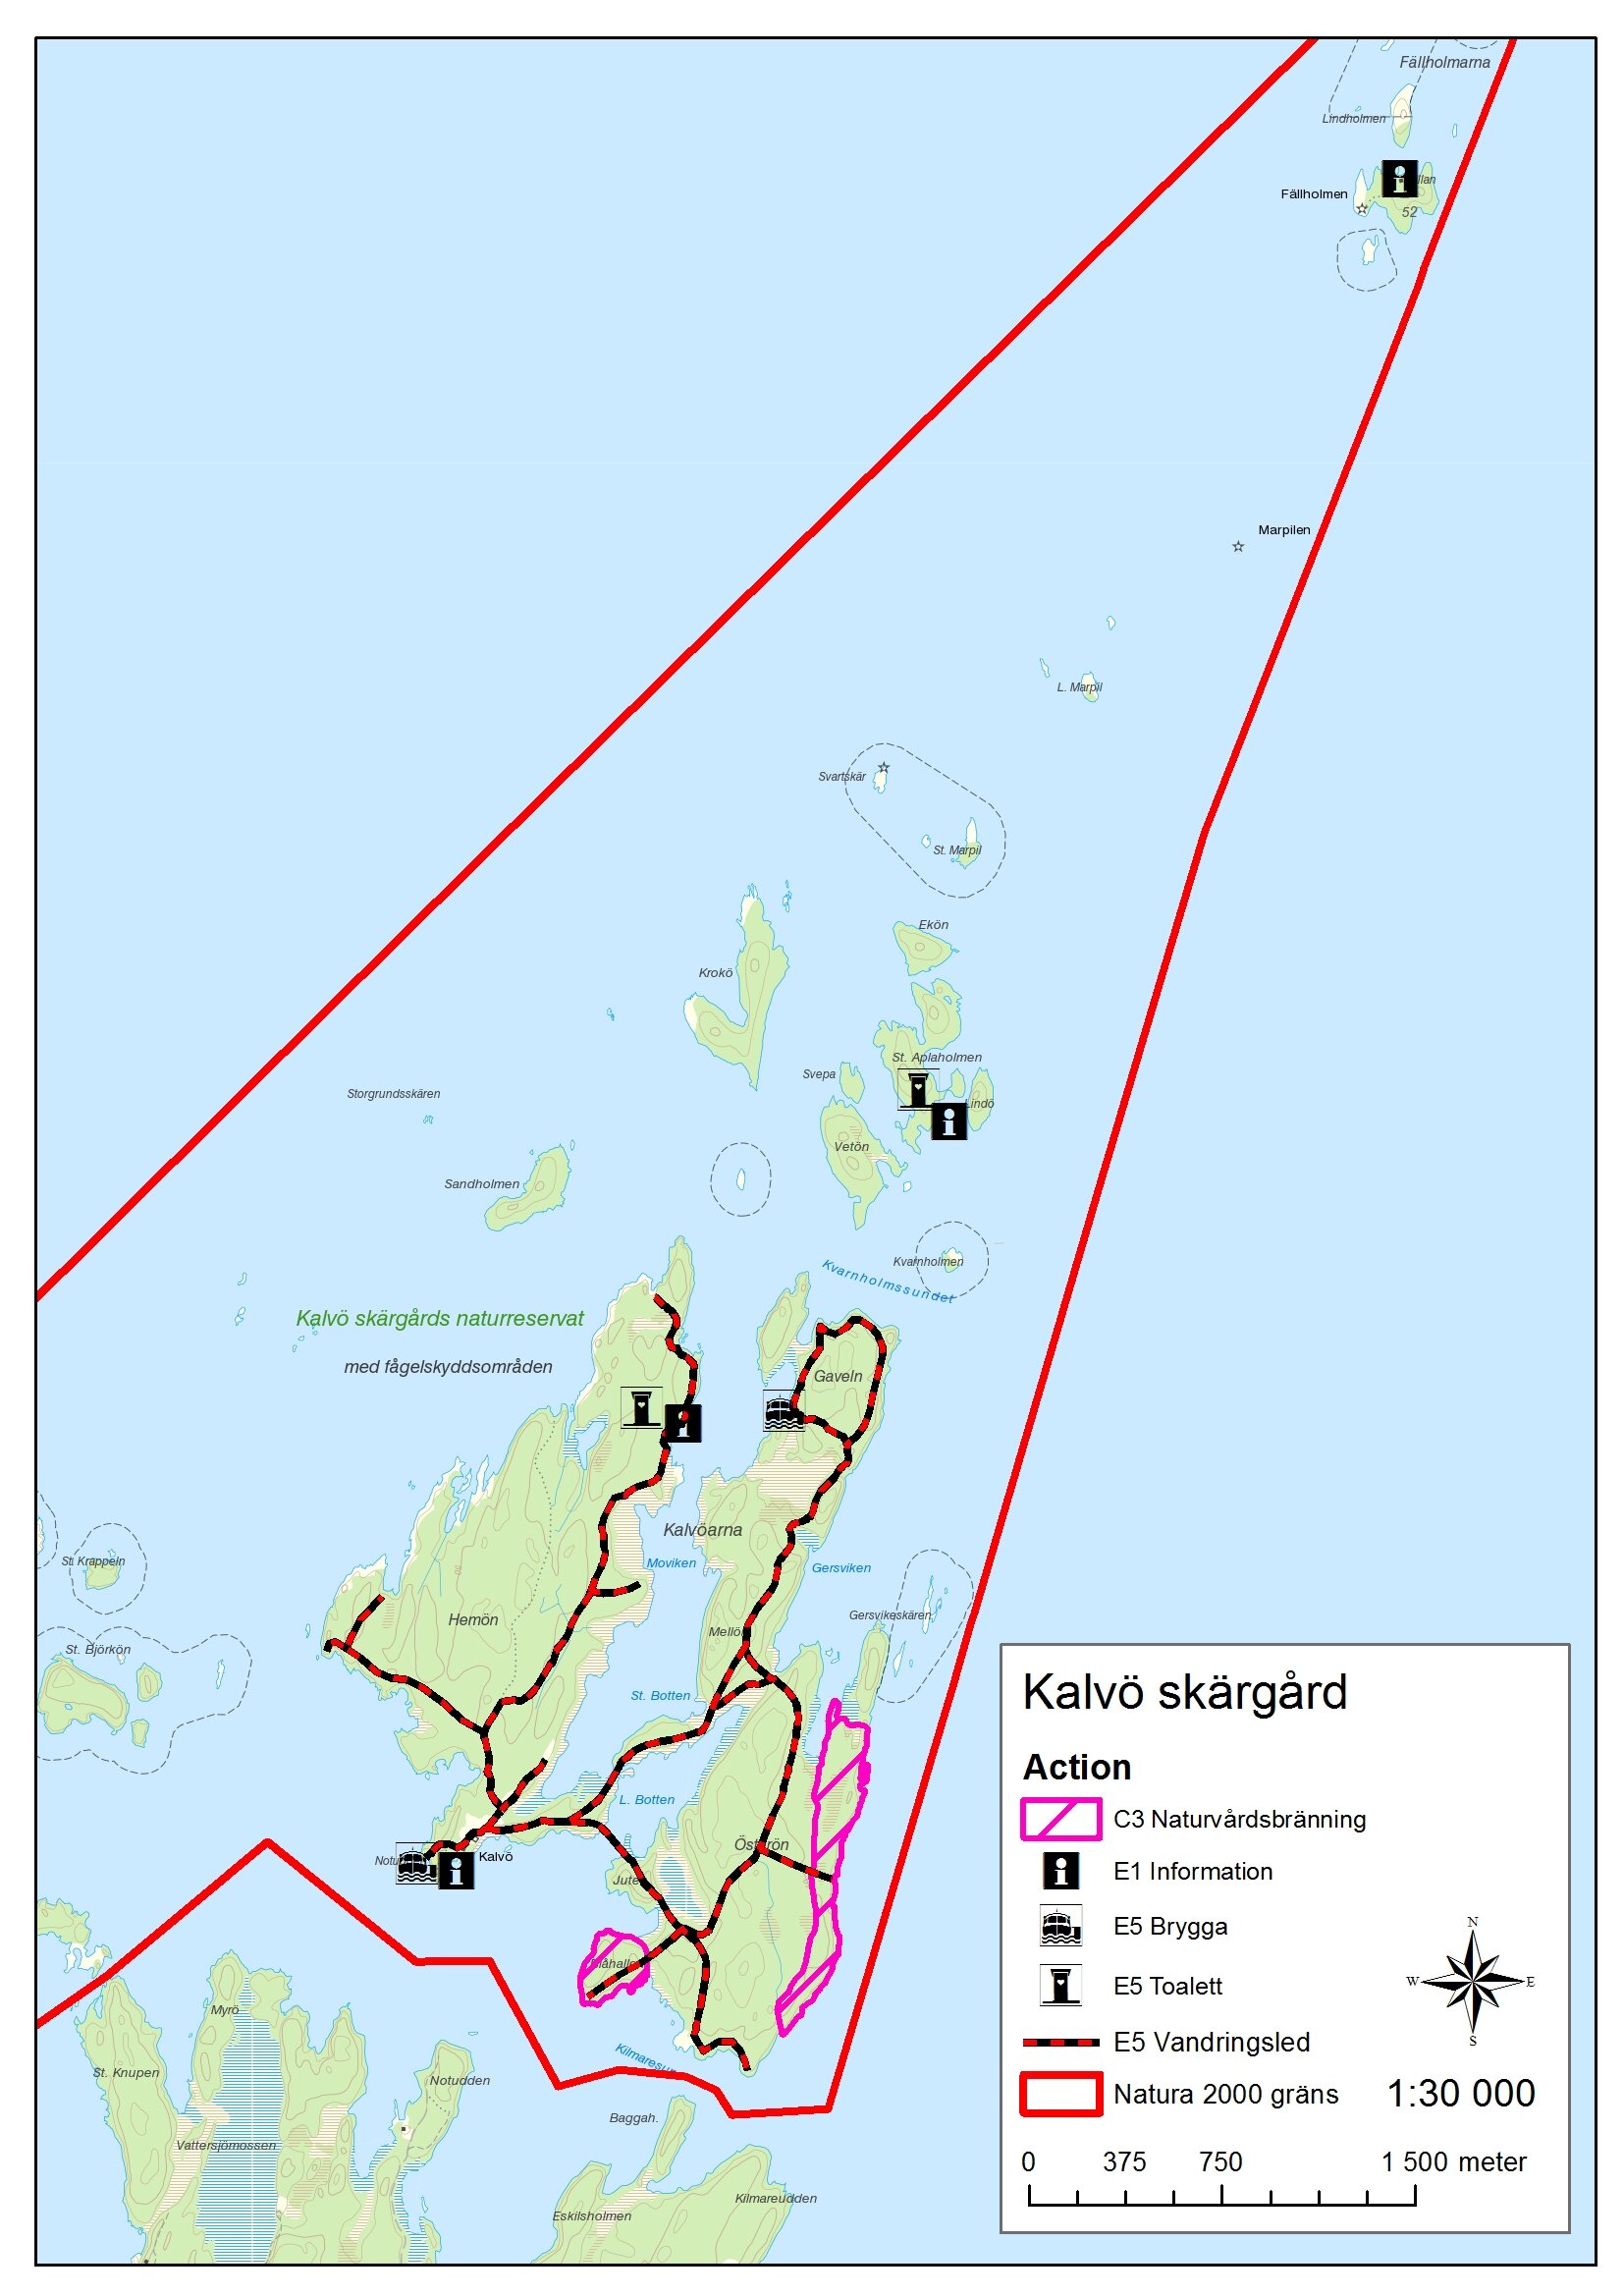 Översiktskarta av de åtgärder (actions) som ska göras inom Kalvö skärgård.